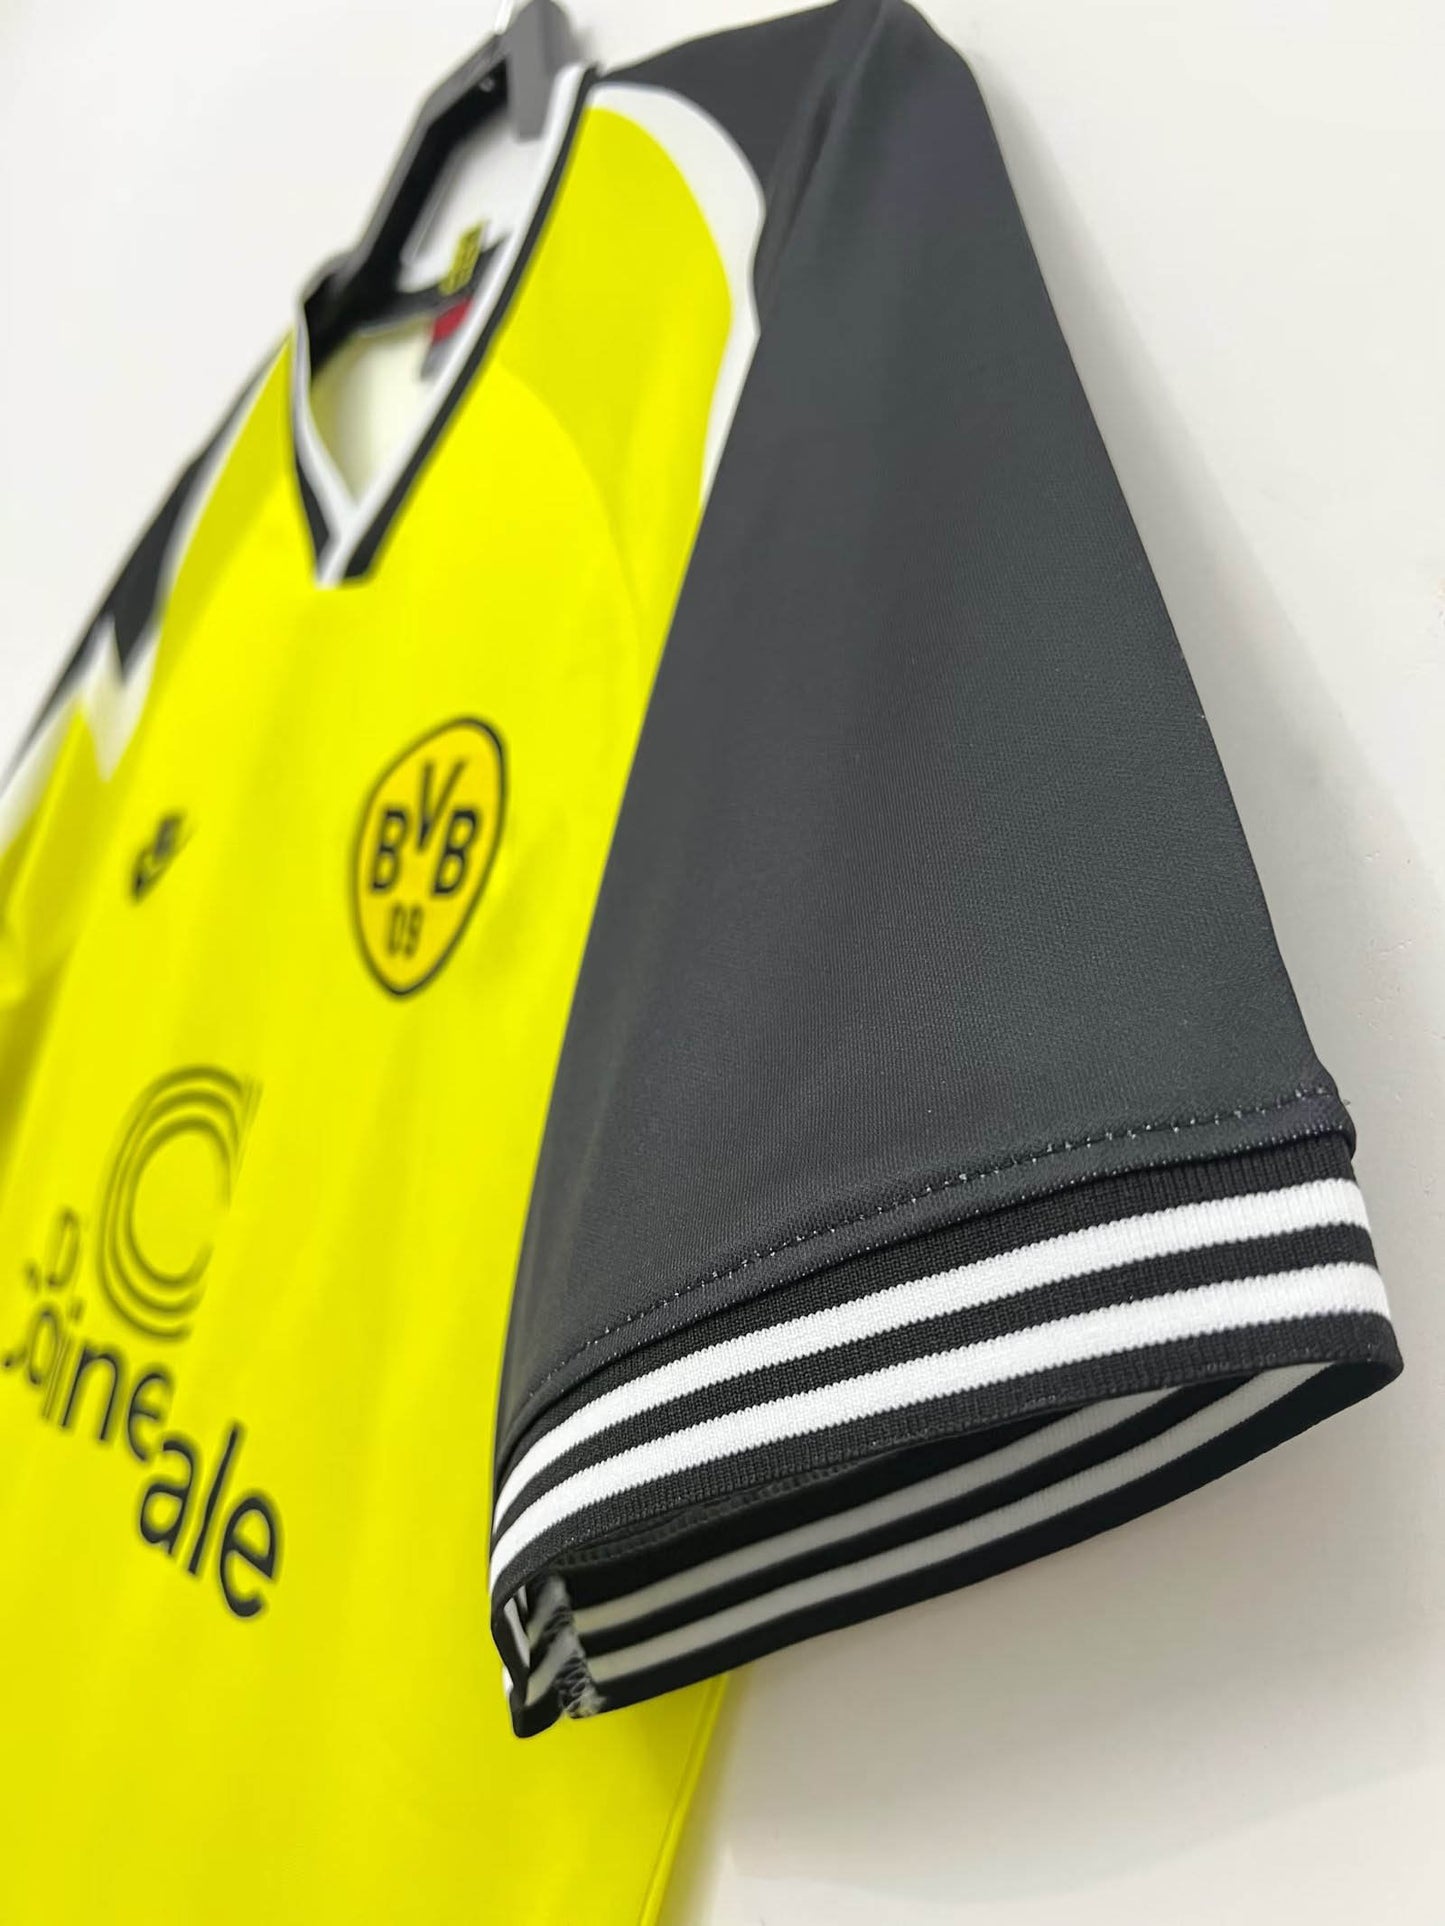 1995/1996 Retro Dortmund Home Football Shirt